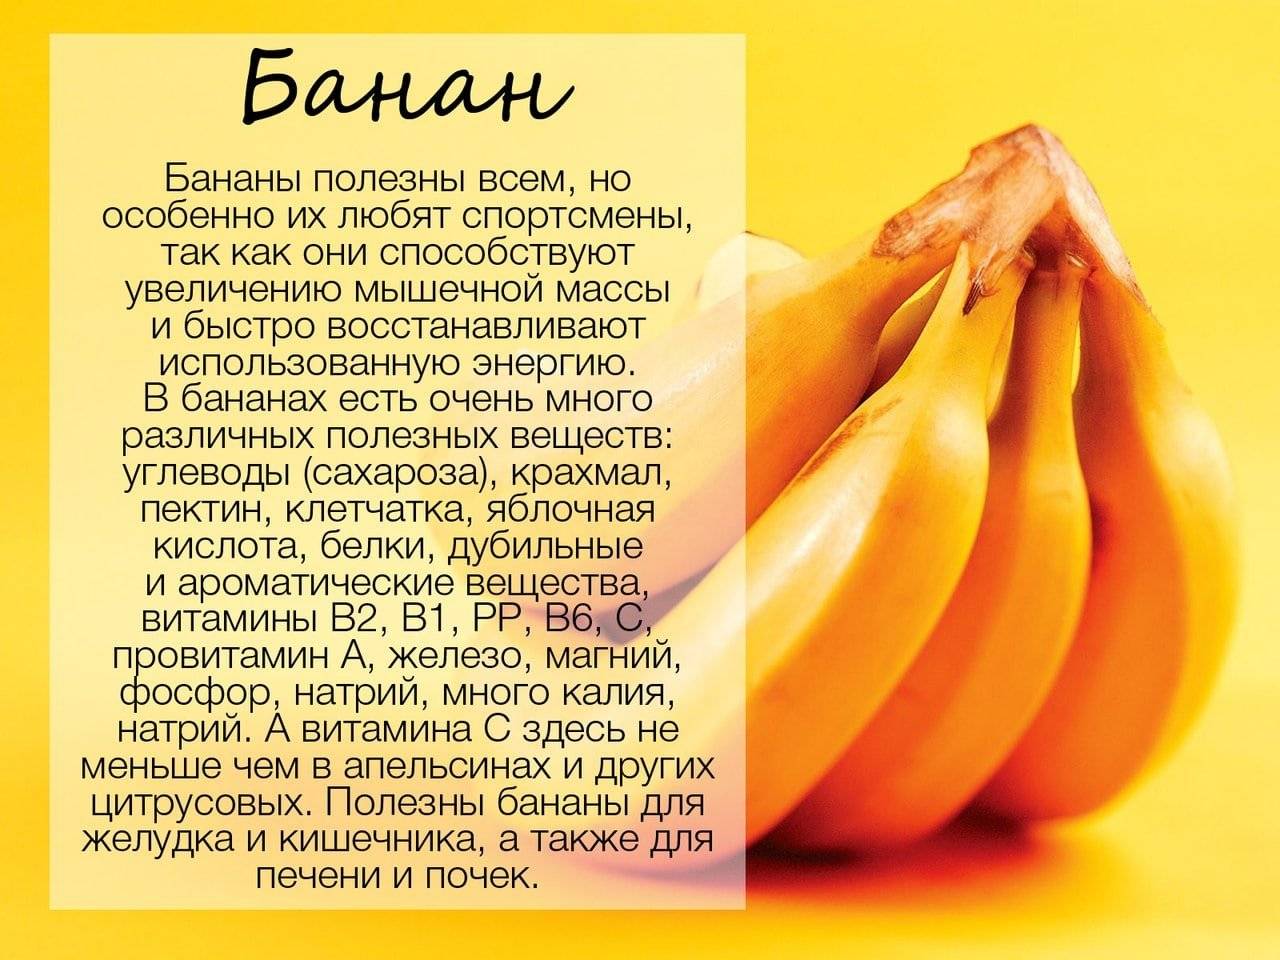 1 банан килокалории. Энергетическая ценность банана 1 шт без кожуры. Состав банана белки жиры углеводы витамины. Сколько калорий в 1 банане. Банан БЖУ на 100 грамм.